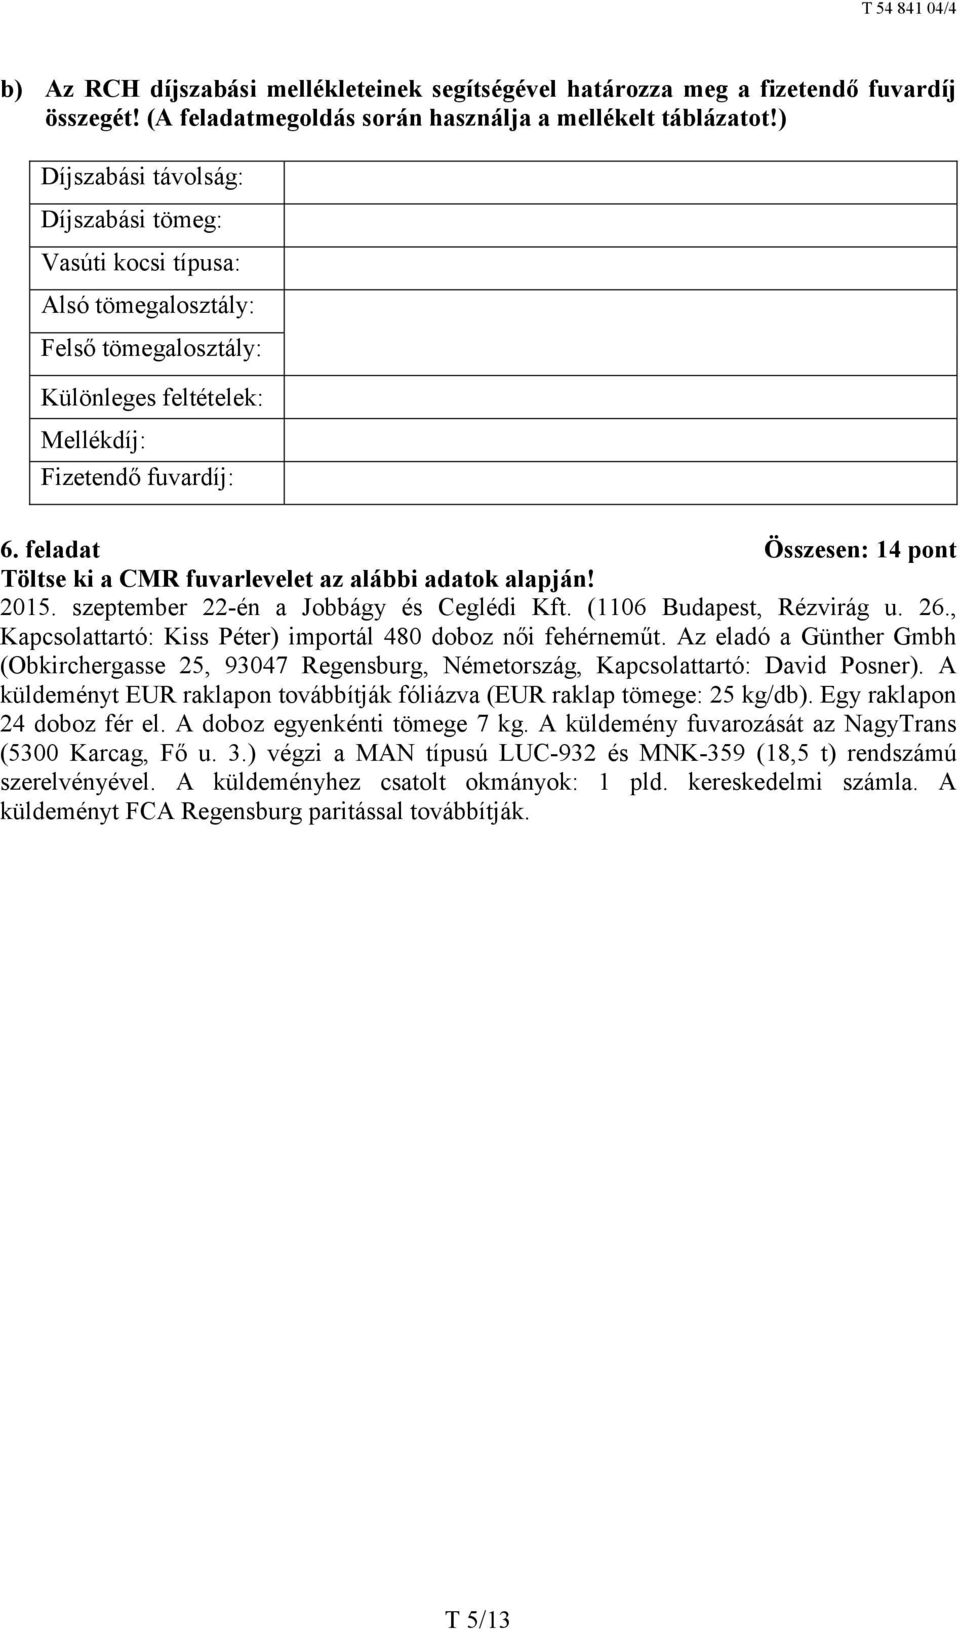 feladat Összesen: 14 pont Töltse ki a CMR fuvarlevelet az alábbi adatok alapján! 2015. szeptember 22-én a Jobbágy és Ceglédi Kft. (1106 Budapest, Rézvirág u. 26.